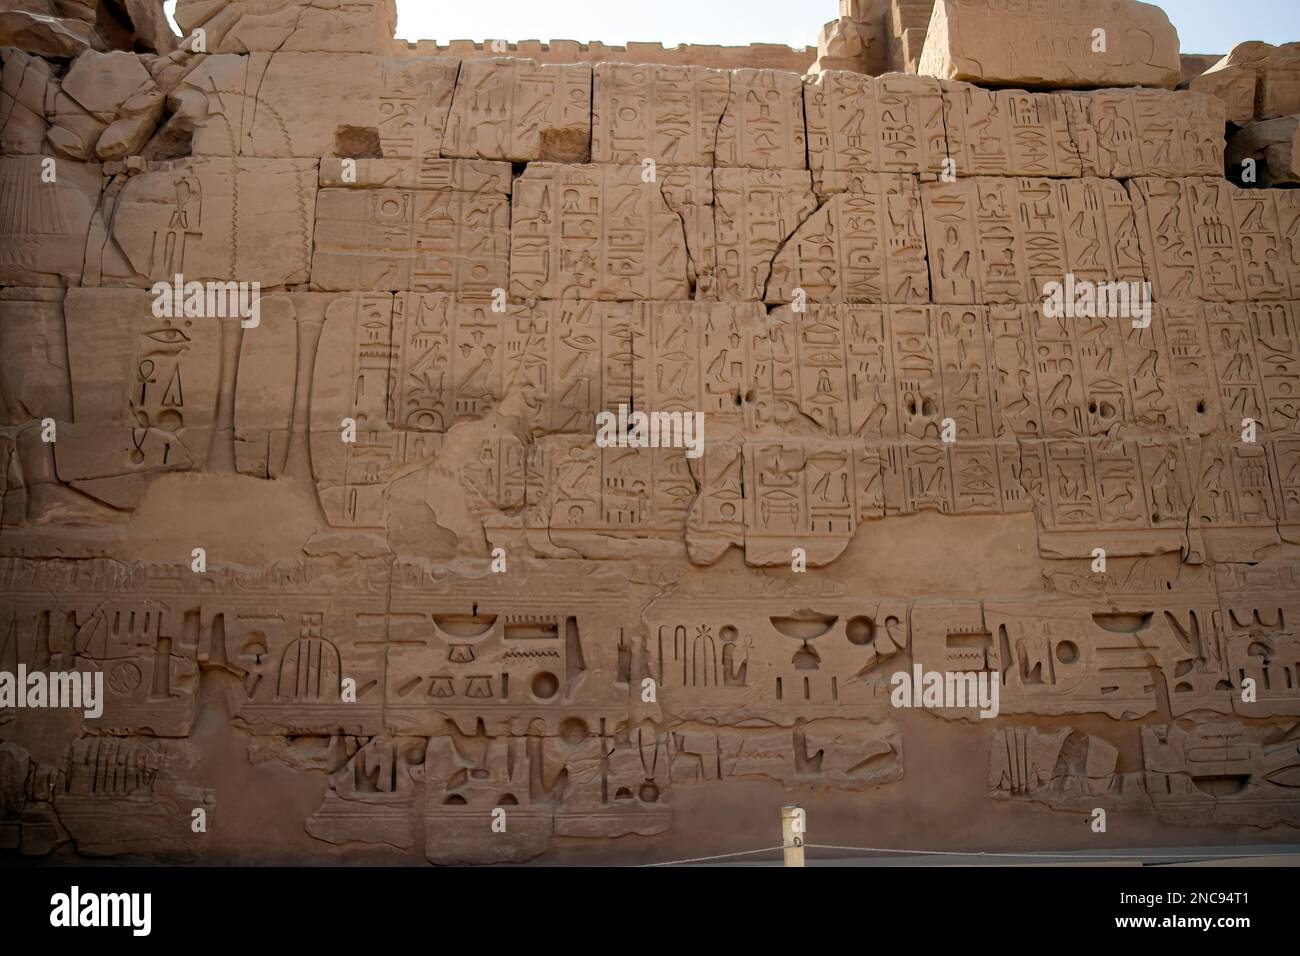 Luxor, Egitto. Il complesso del Tempio di Karnak, comunemente noto come Karnak, comprende un vasto mix di templi decadenti, 26th marzo 2013. Foto Stock